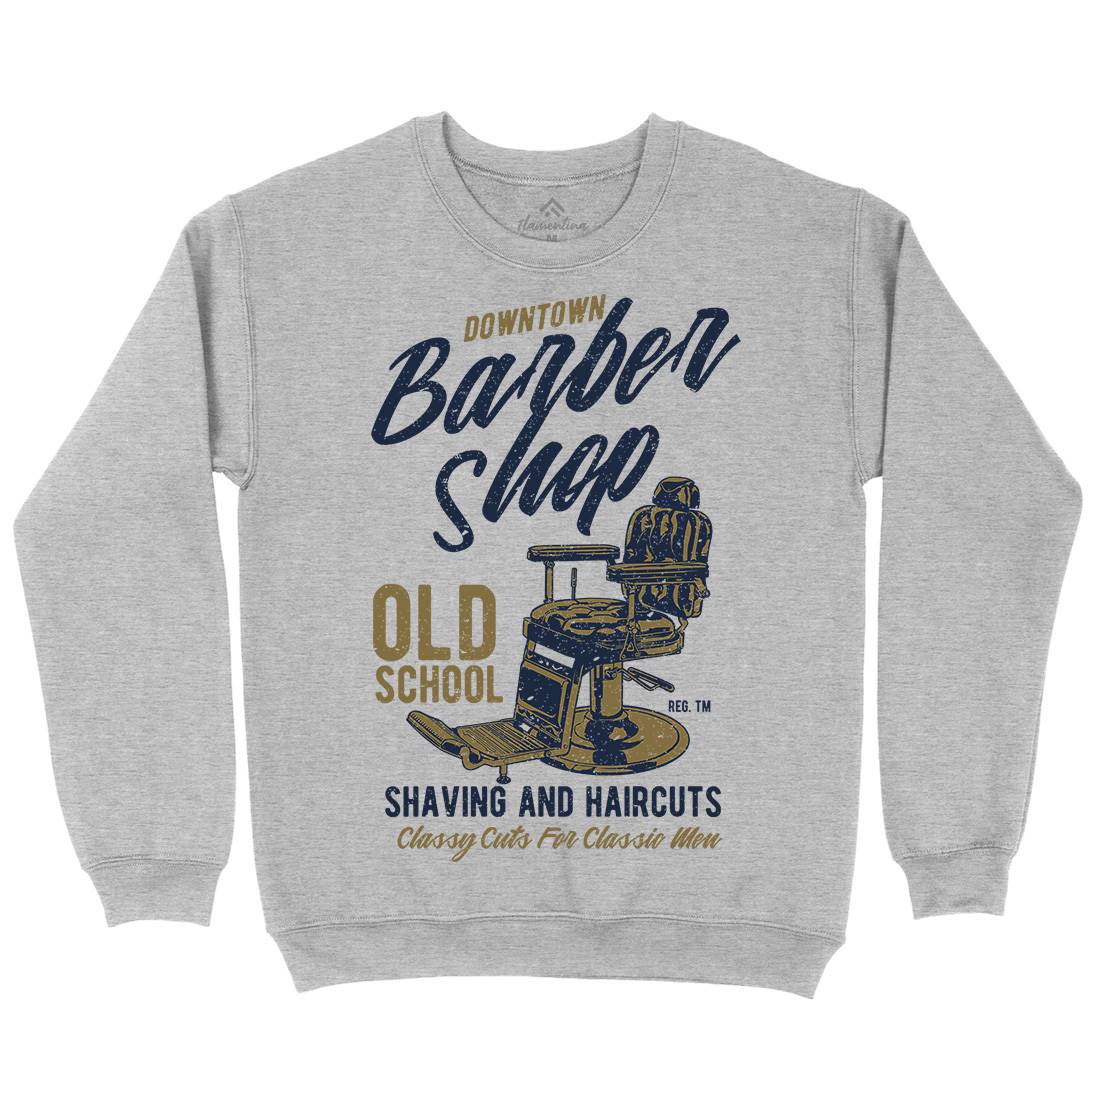 Downtown Barbershop Kids Crew Neck Sweatshirt Barber A646